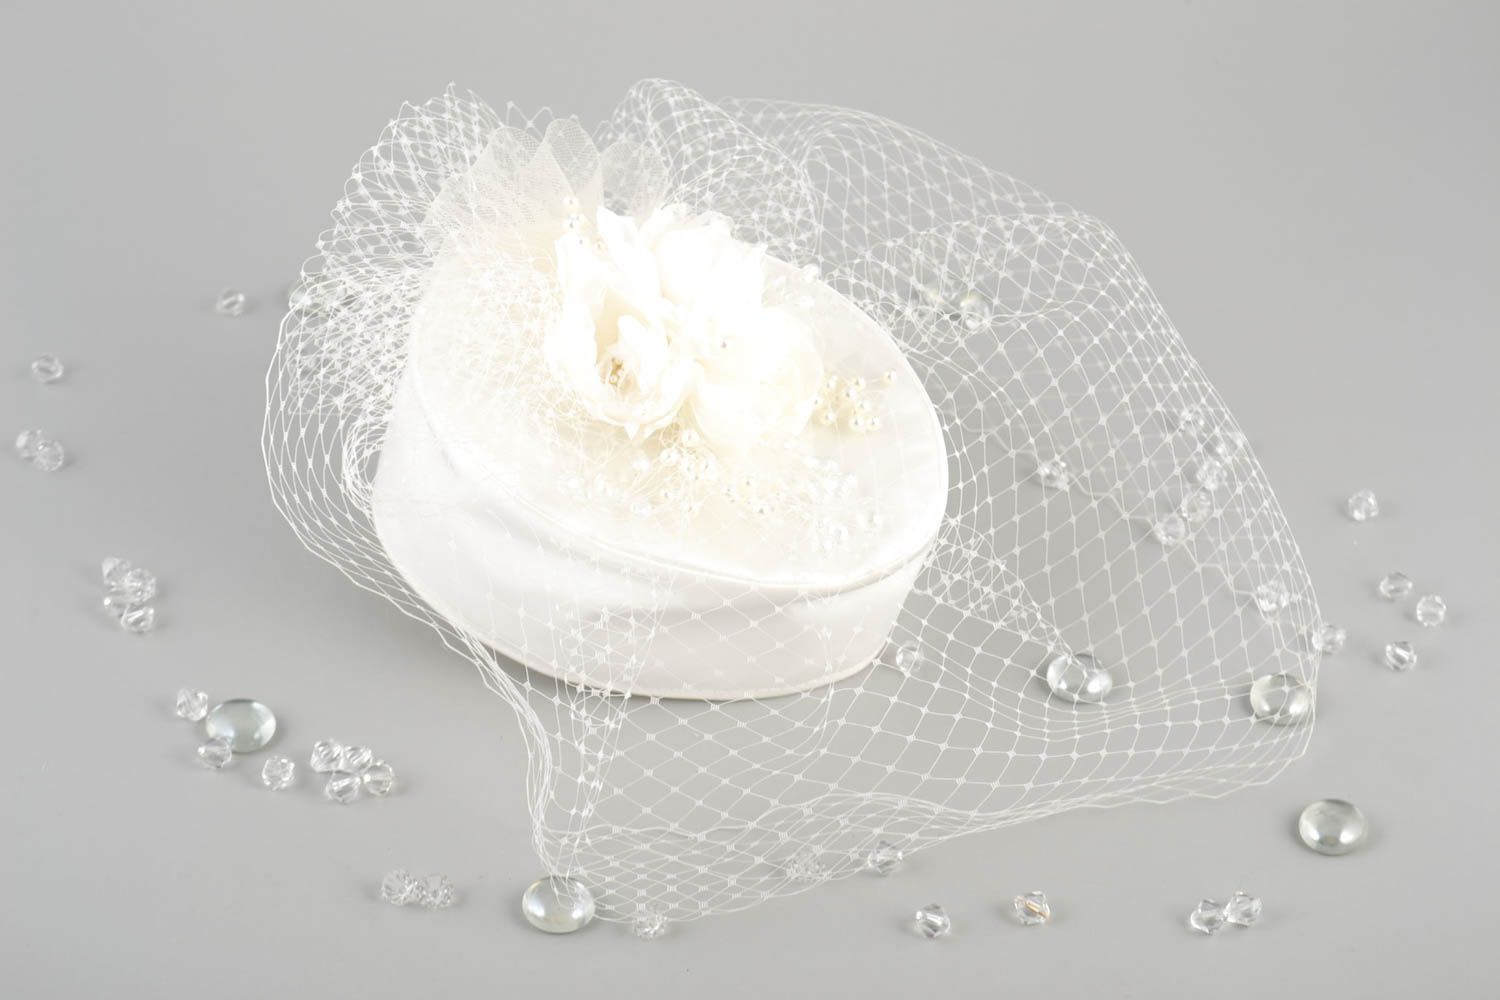 Свадебная шляпка ручной работы свадебное украшение кремовое свадебный аксессуар  фото 1